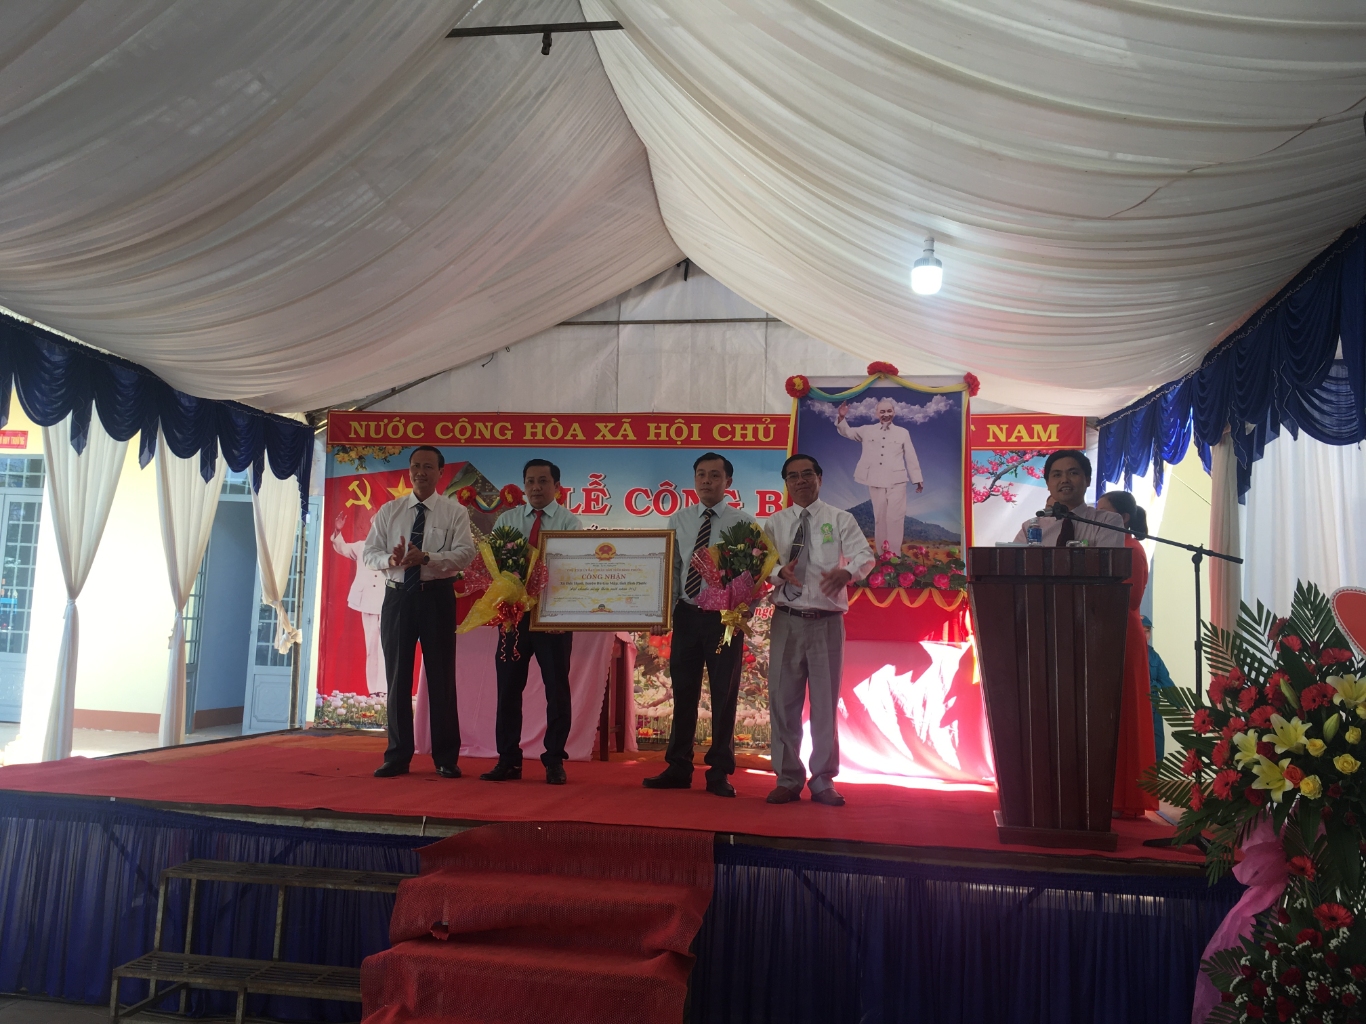 Lãnh đạo Tỉnh Bình Phước và huyện Bù Gia Mập trao bằng công nhận xã đạt chuẩn nông thôn mới cho đại diện Đảng ủy, chính quyền và nhân dân xã Đức Hạnh